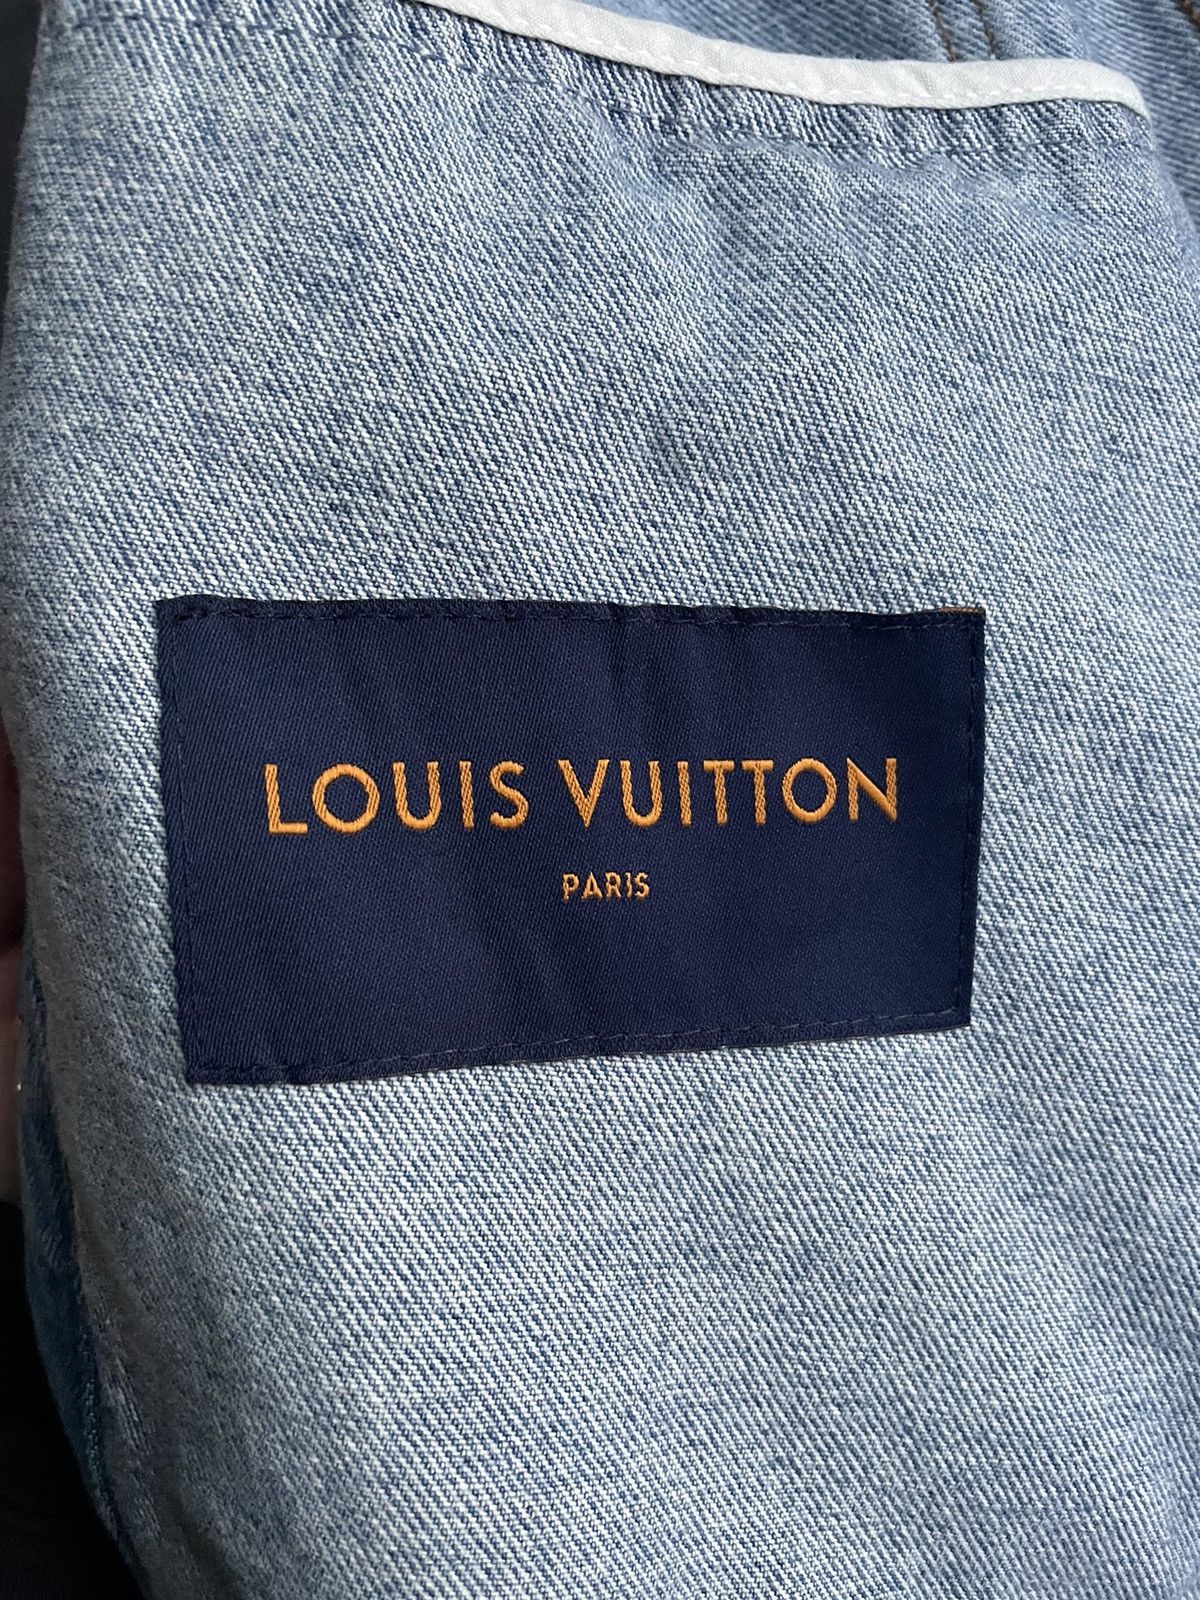 Louis Vuitton Louis Vuitton Floral Embroidered Denim Jacket Size US M / EU 48-50 / 2 - 15 Thumbnail